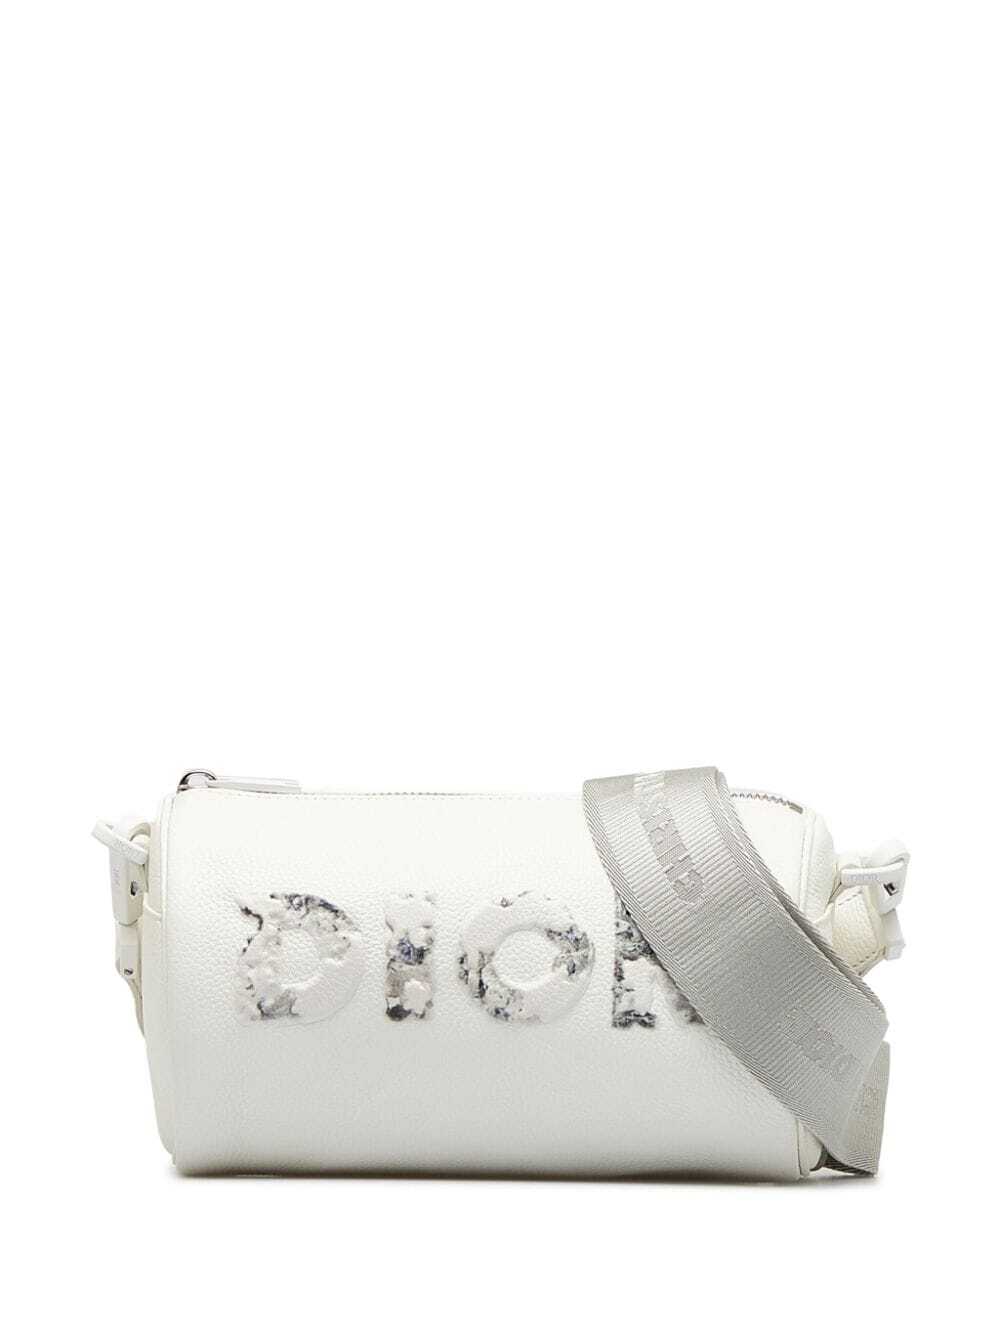 Christian Dior x Daniel Arsham pre-owned Roller crossbody bag - White